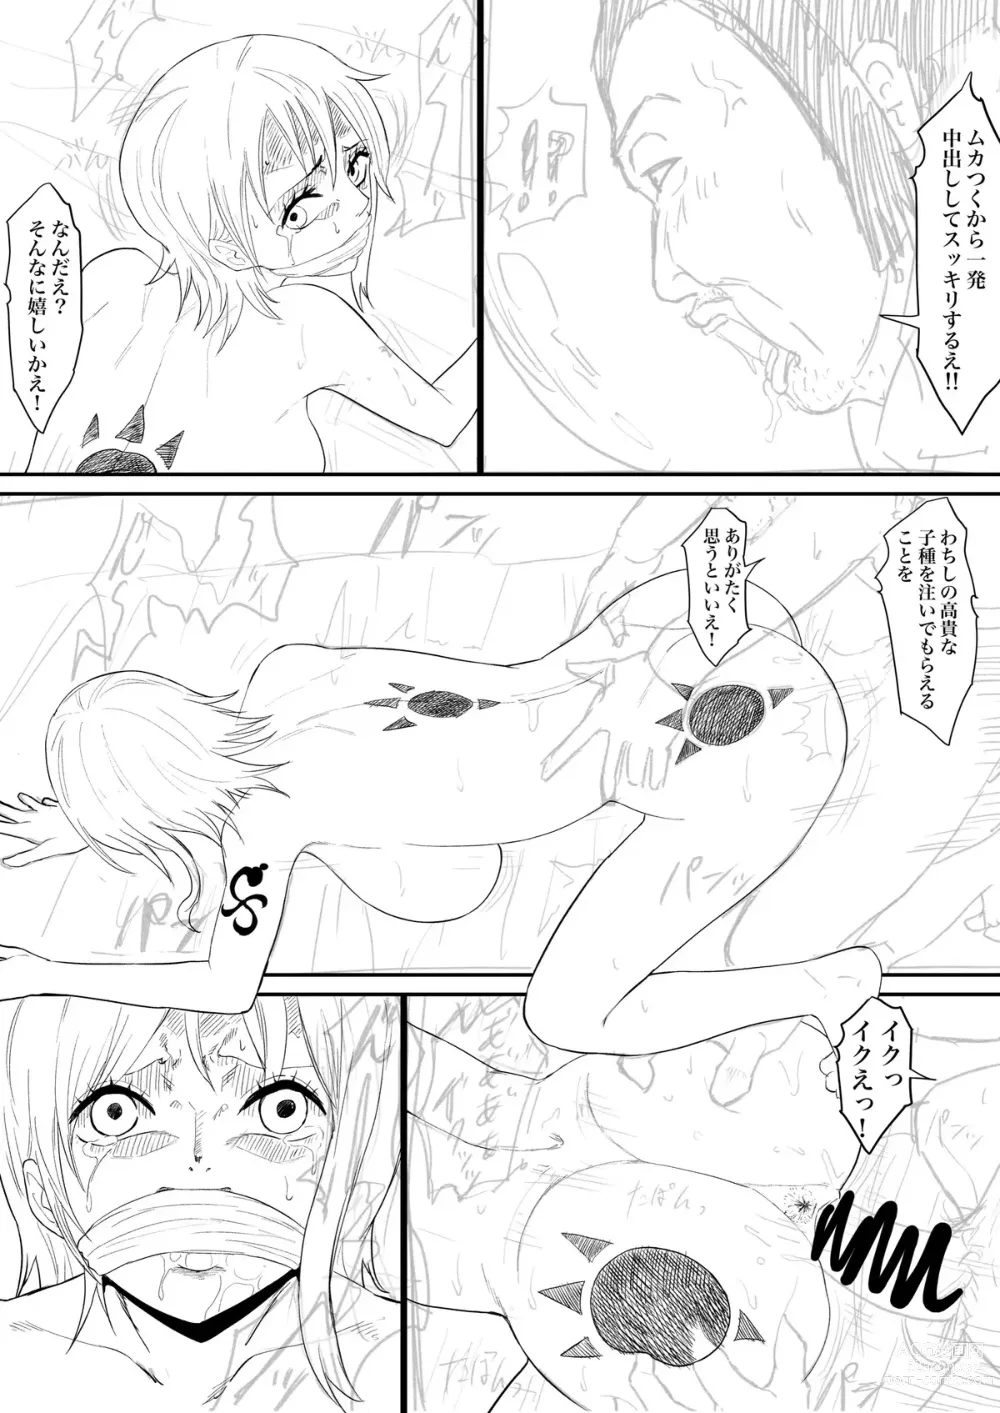 Page 6 of doujinshi Nami Manga + various bonus